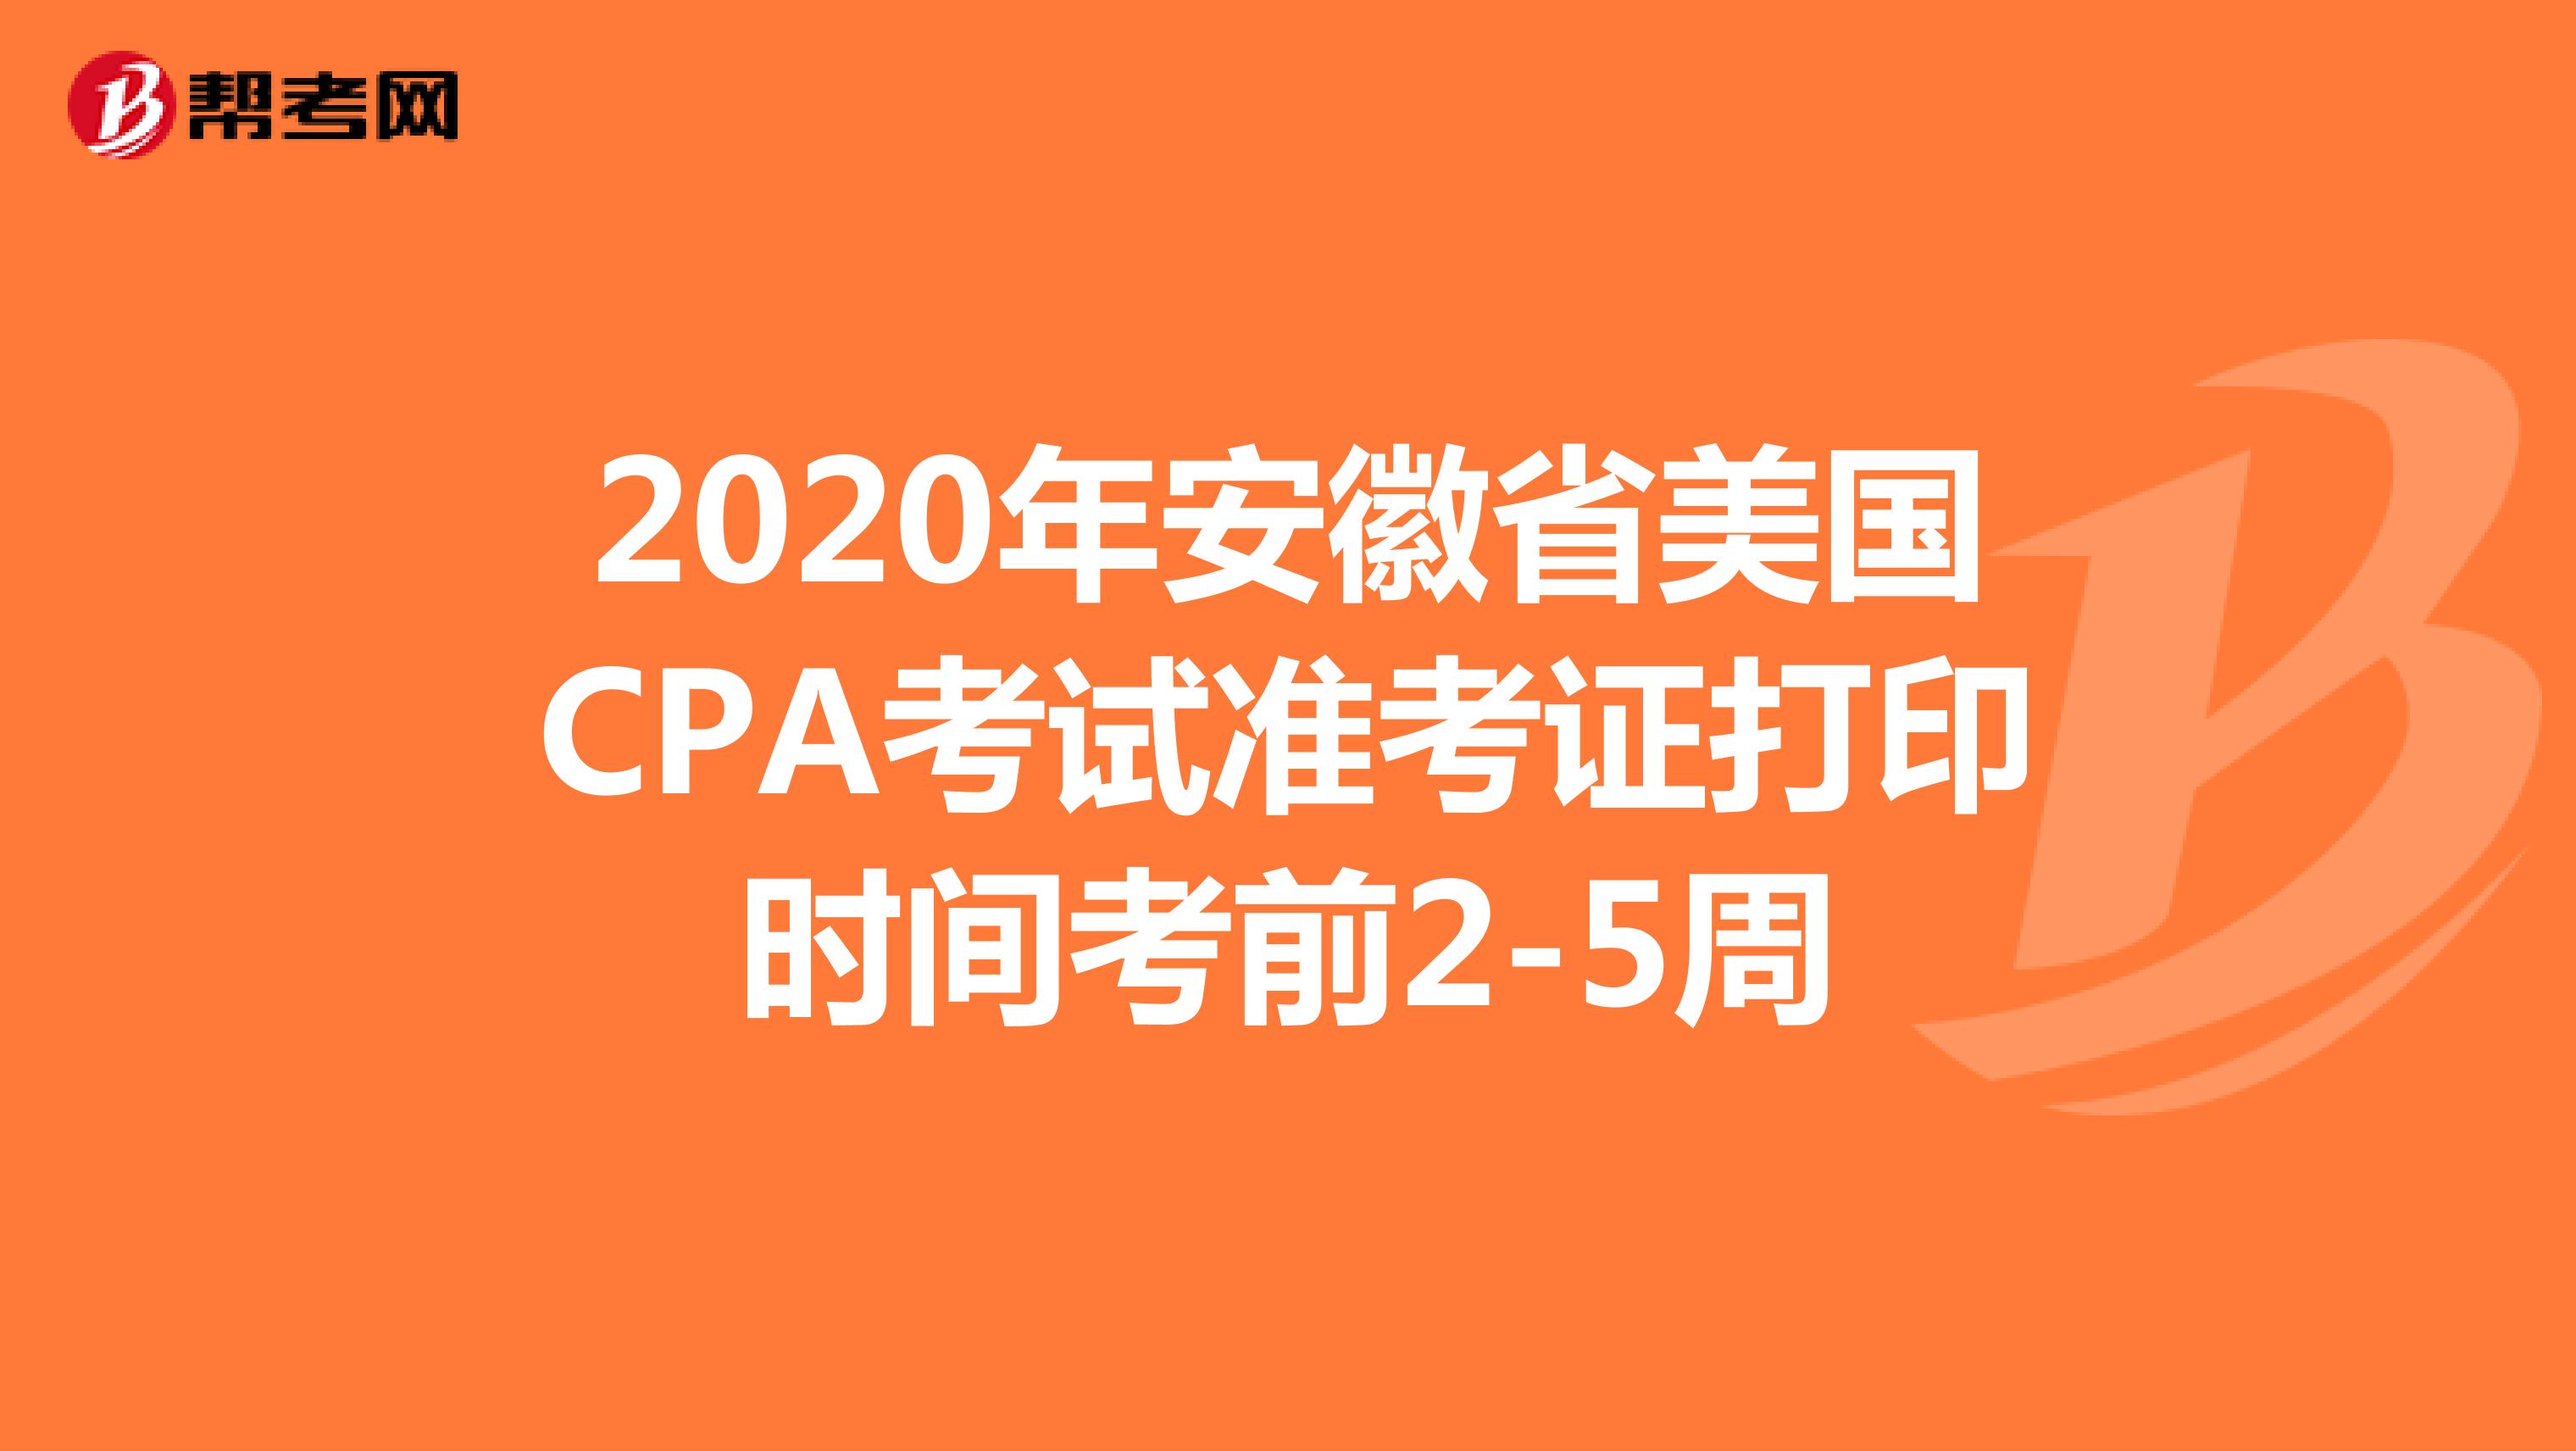 2020年安徽省美国CPA考试准考证打印时间考前2-5周